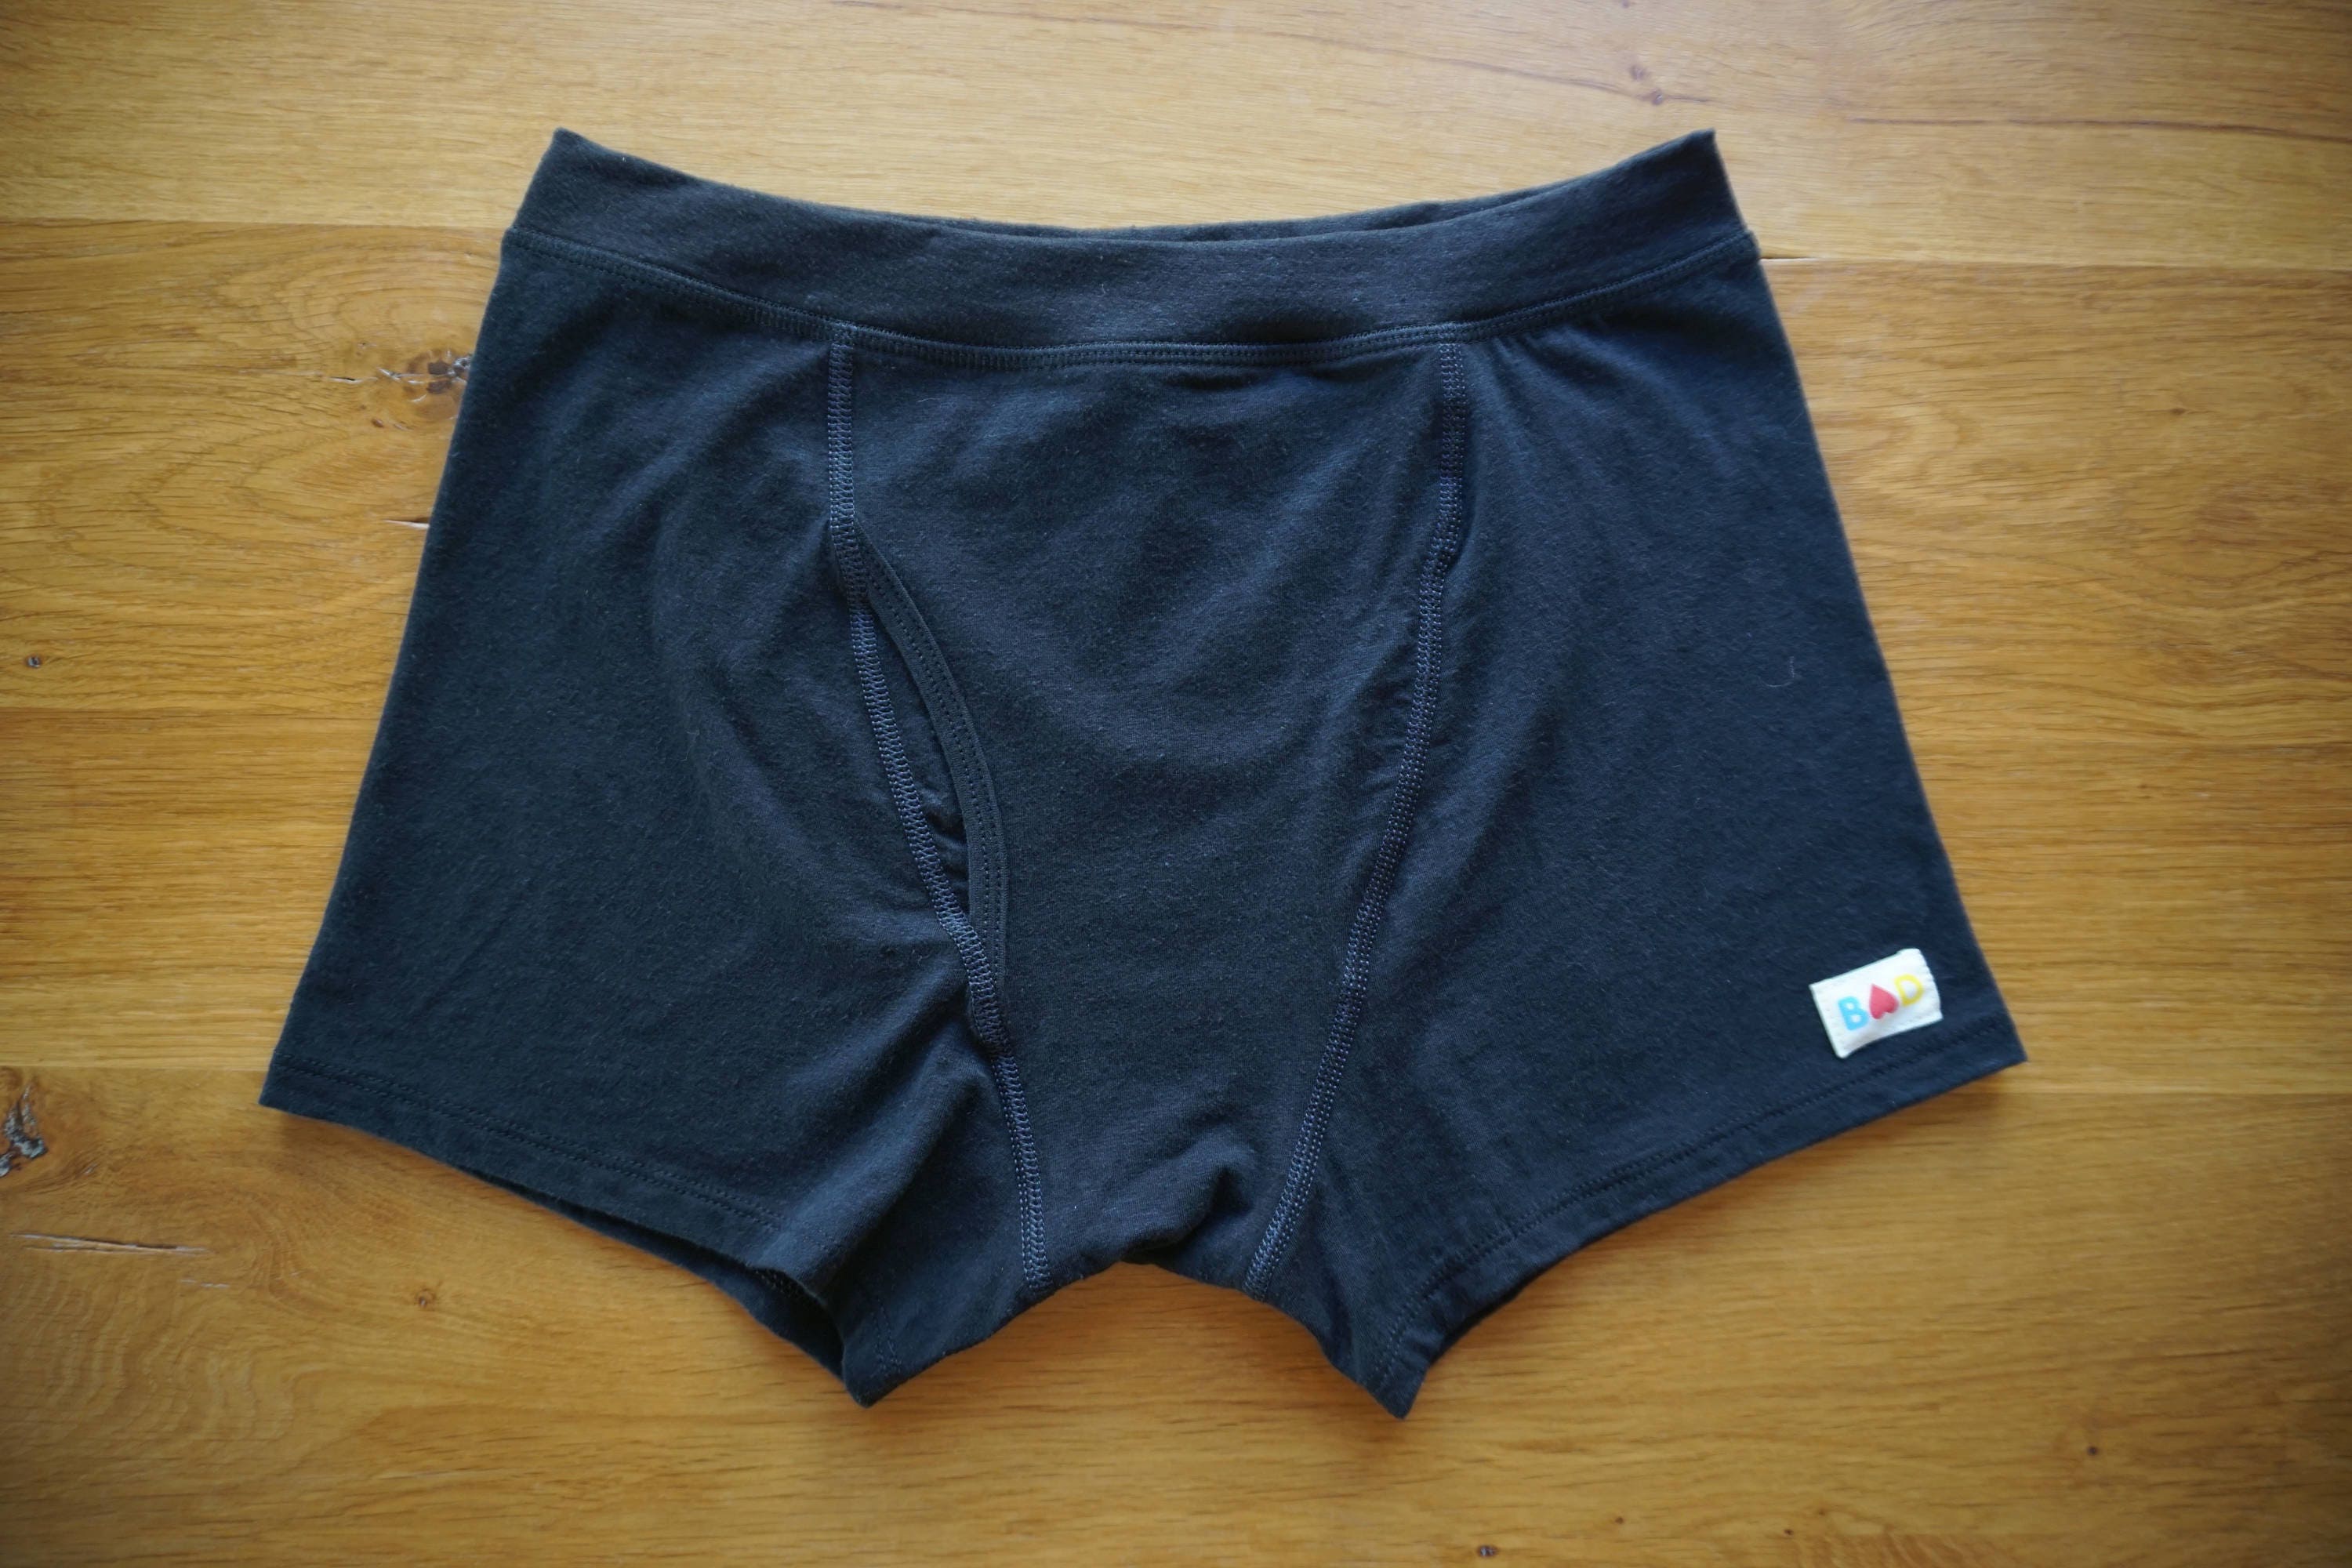 Black Organic Cotton & Hemp Boxer Briefs Men's Underwear